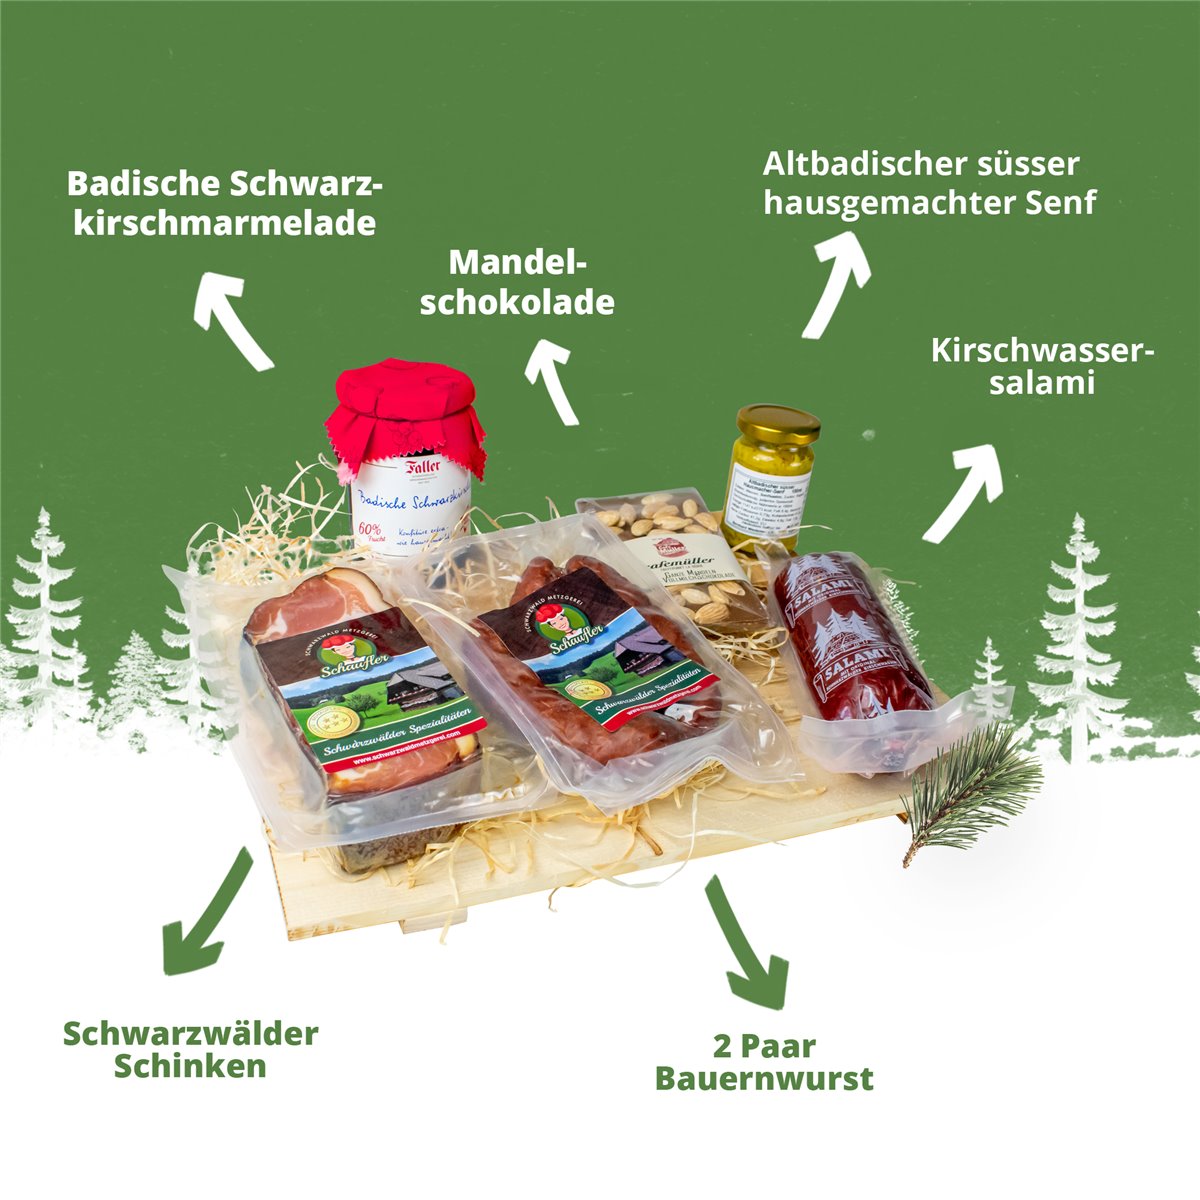 Schwarzwald Metzgerei "MARIE" Präsentkorb - Würsten, Marmelade, Senf, Schokolade, Schinken und Salami - 6 teilig
